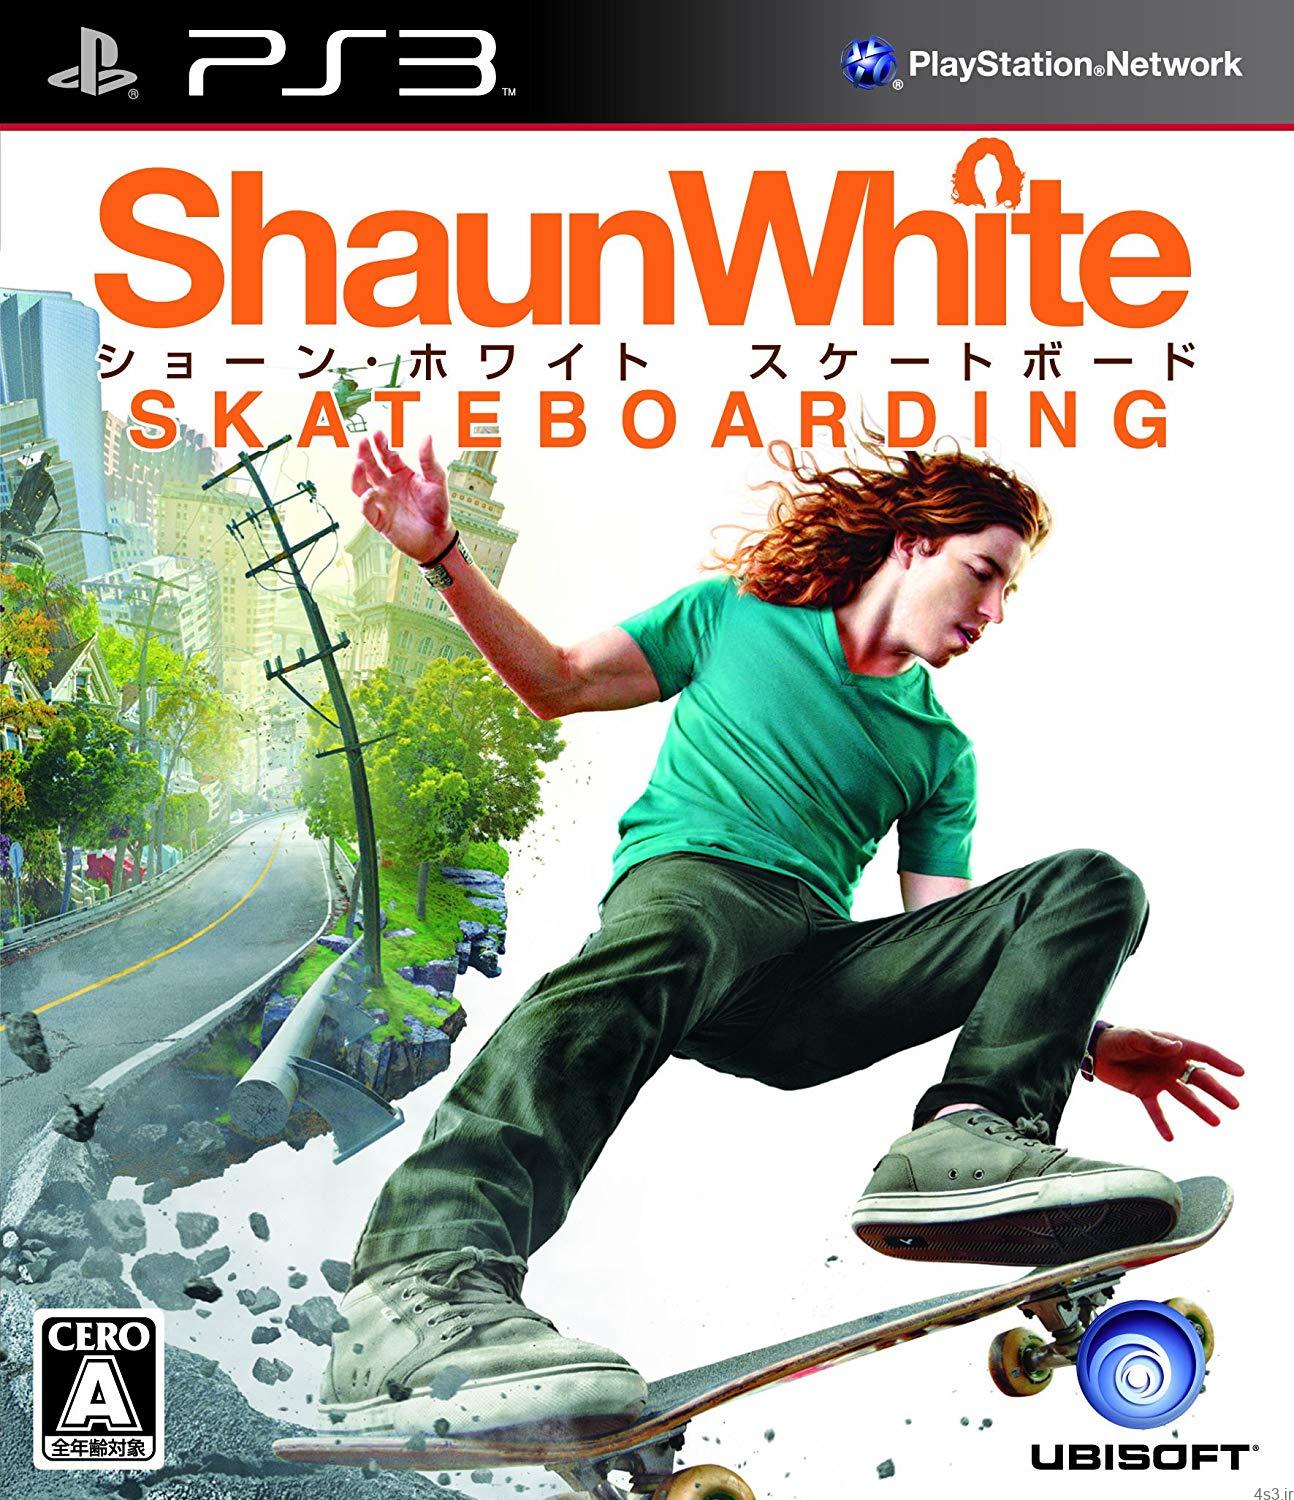 دانلود Shaun White Skateboarding WII, PS3, XBOX 360 – بازی حرکات نمایشی با اسکیت